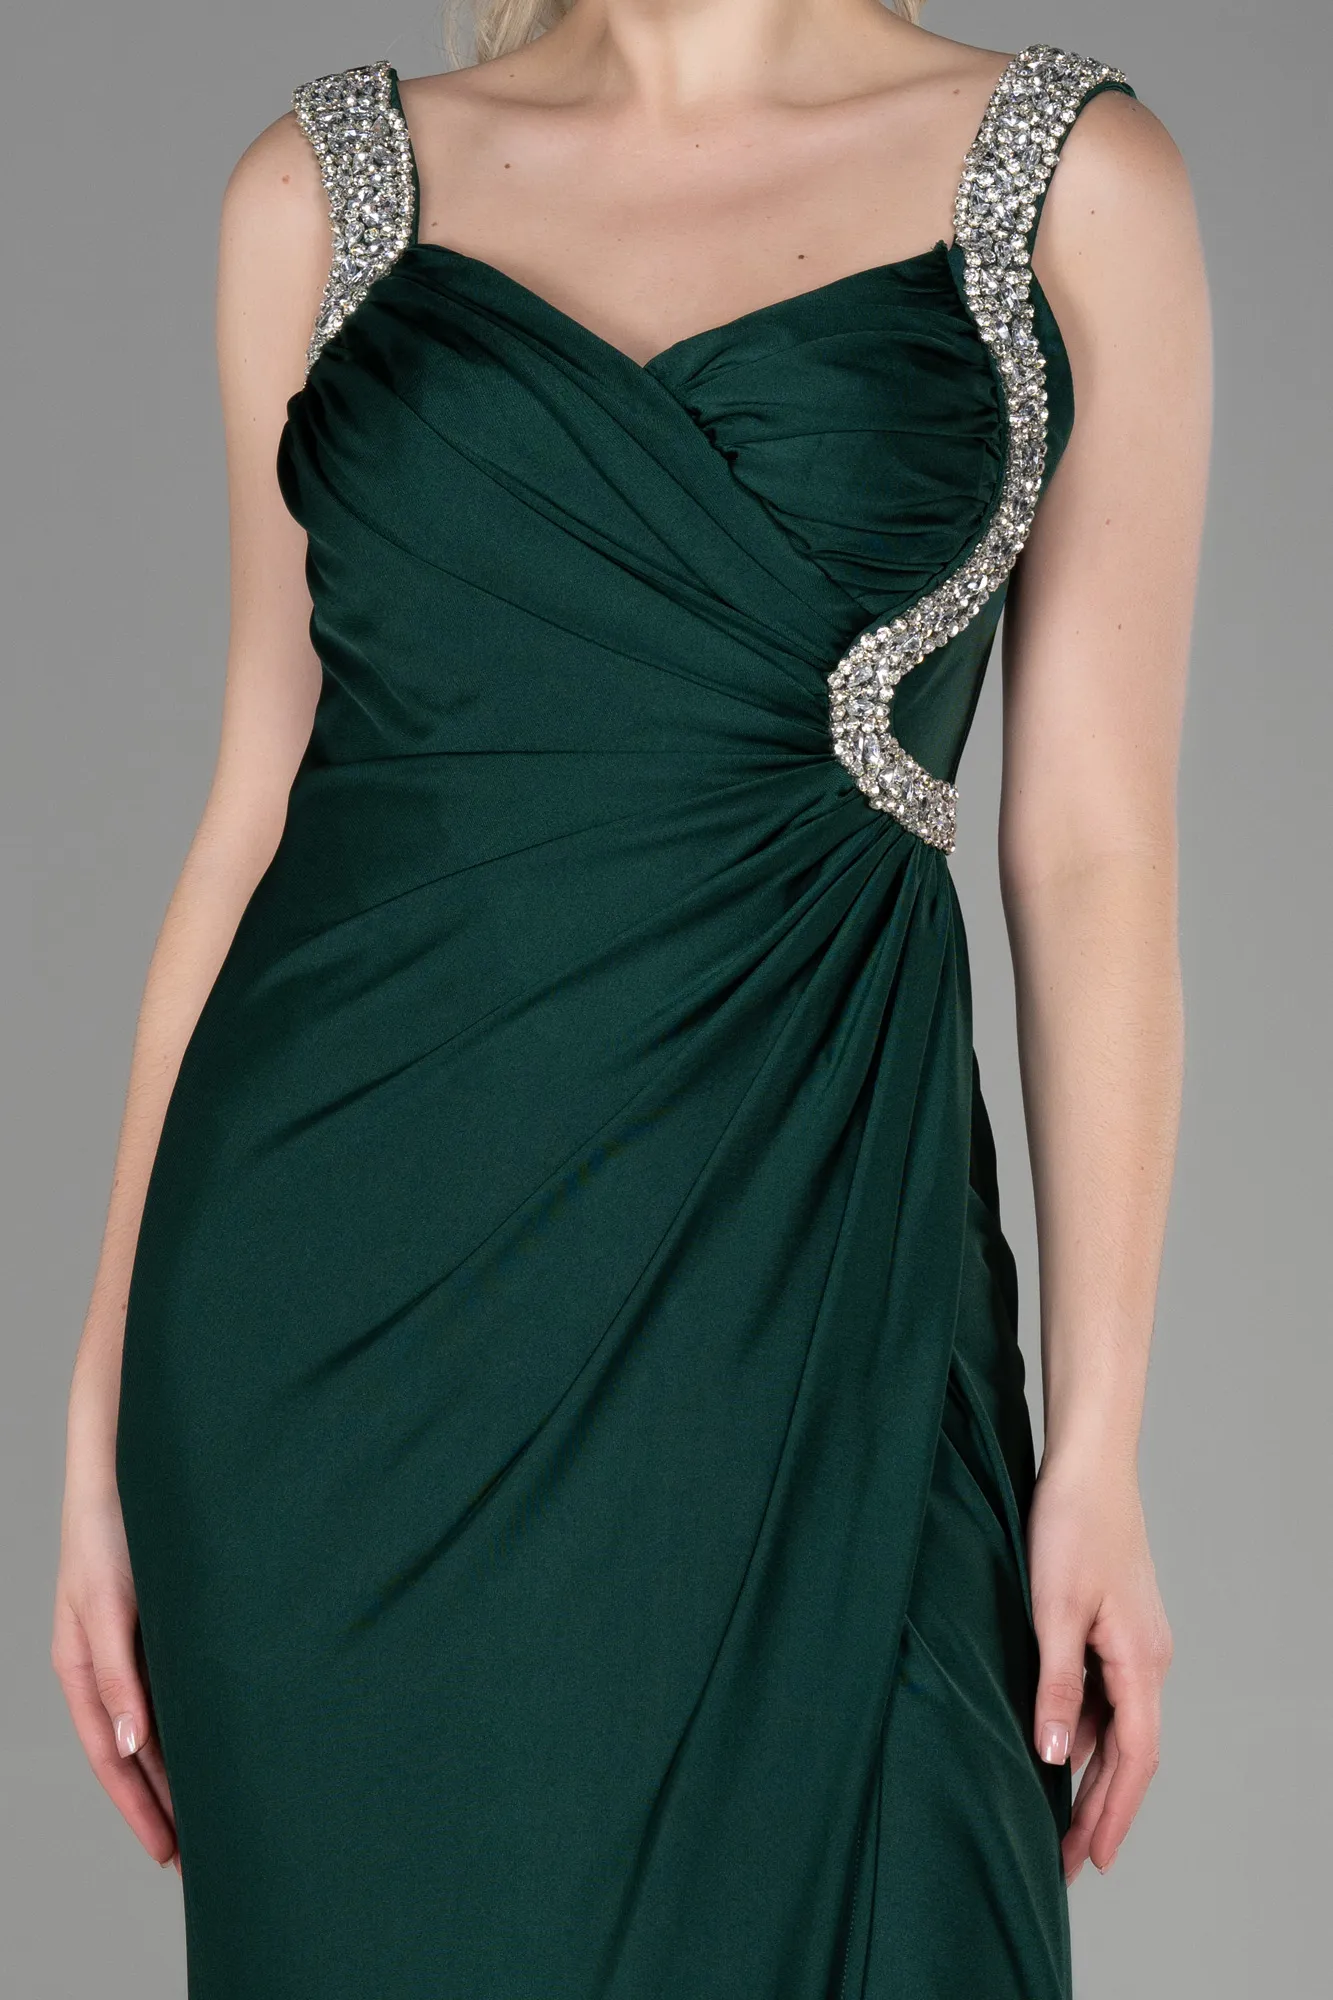 Emerald Green-Long Evening Dress ABU3270